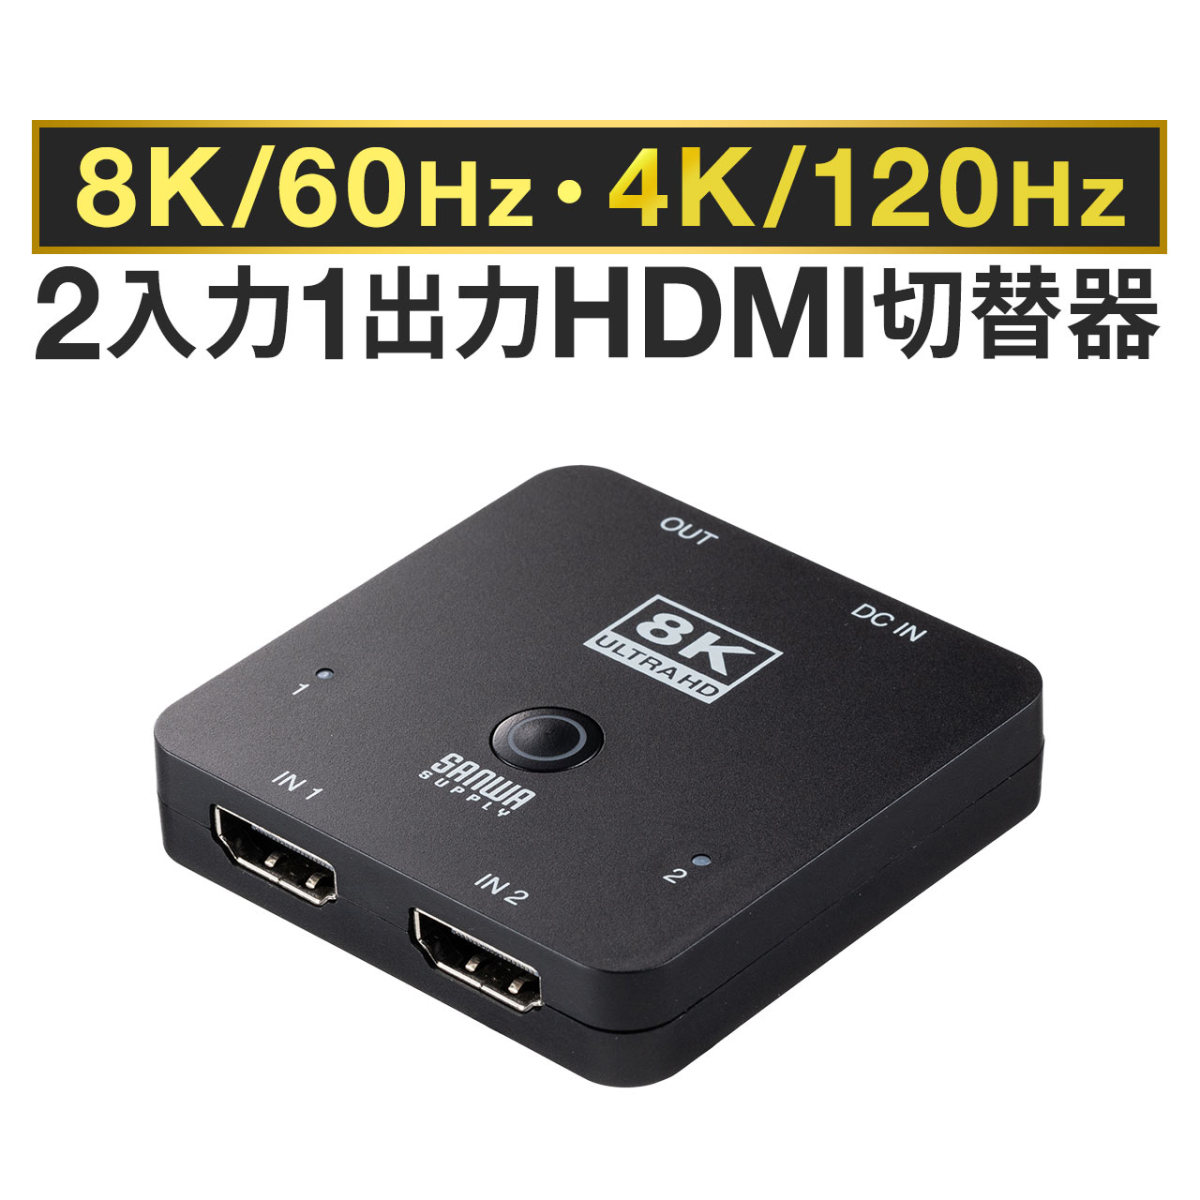 Amazon.co.jp: タイプc USB 変換 SDカードリーダー(3in1)SD+Microsd+USB 3.0 アダプタOTGケーブル Usb- c プラグ マイクロsd TF かーどりーだー カメラ 写真 転送保存データ移行コネクタApple IPhone15 Pro Max Ipad  Thunderboltつなぐキーボードマウスメモリースティック ...